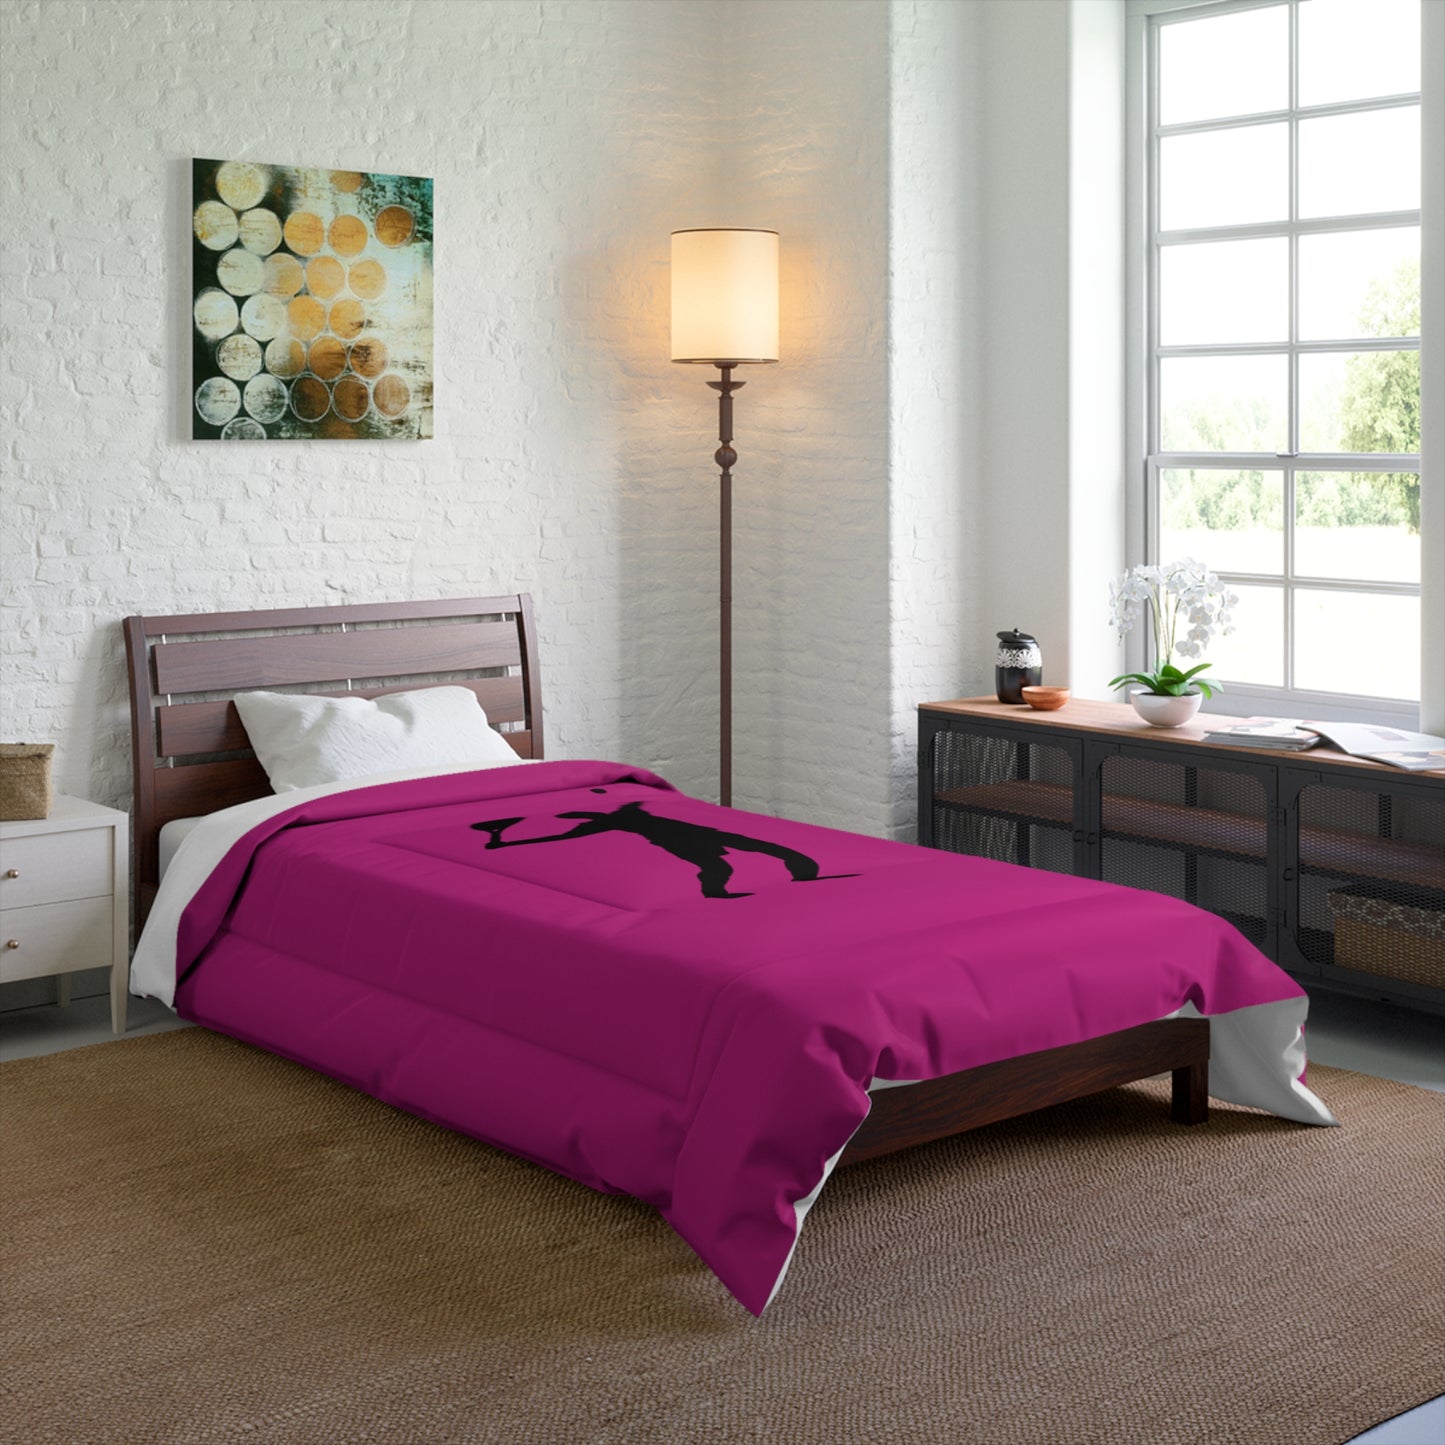 Comforter: Tennis Pink